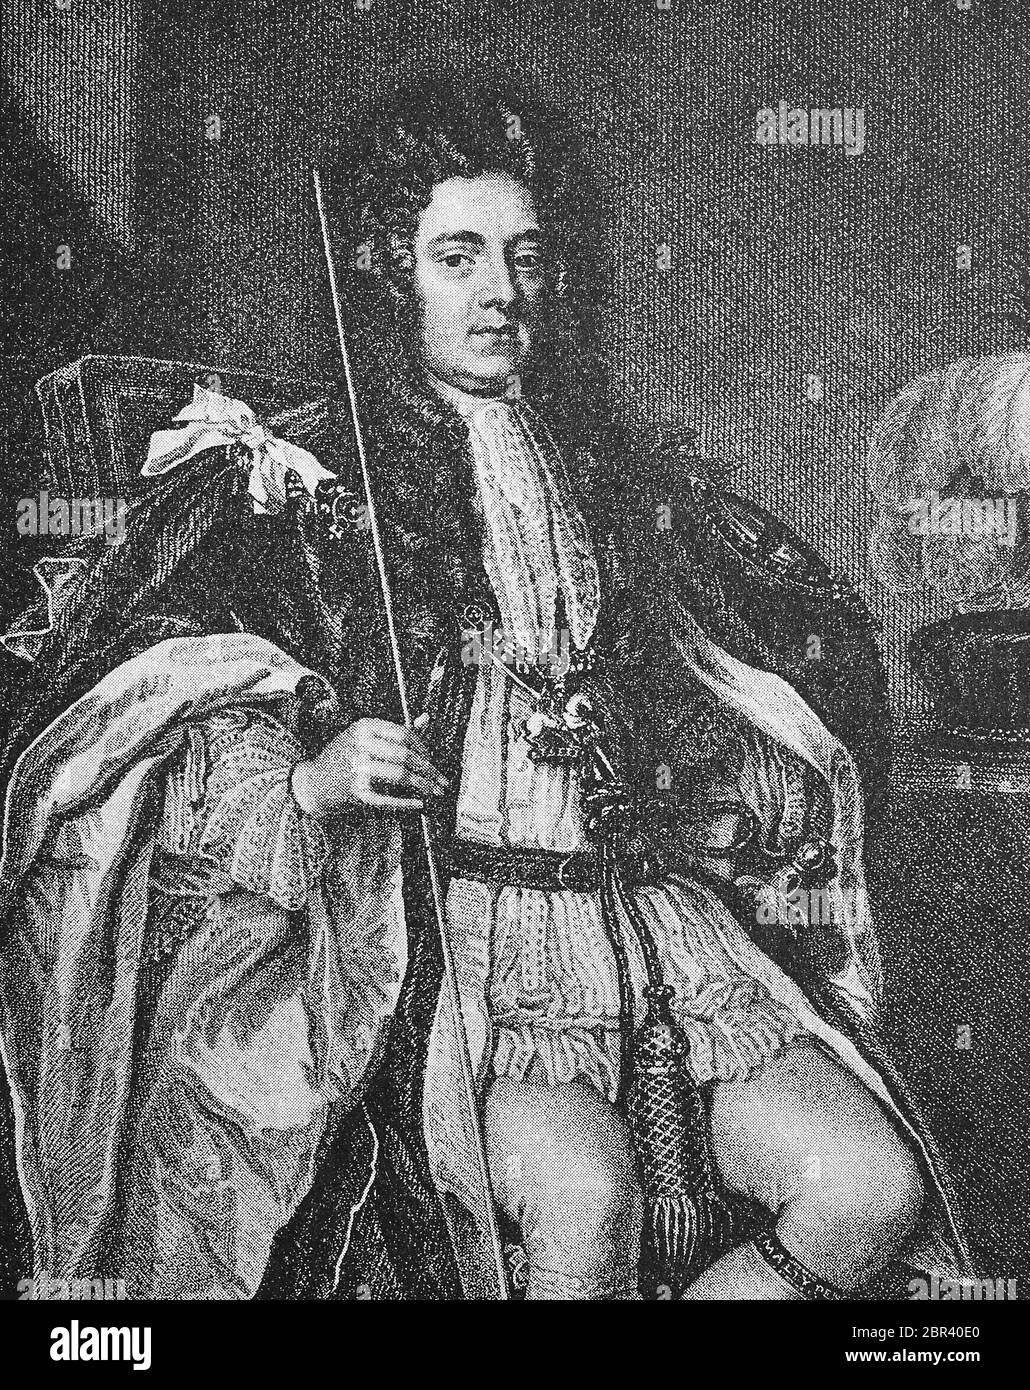 Sidney Godolphin, Earl of Godolphin KG 15 1. Juni 1645 - 15. September 1712, war einer der führenden Politiker Großbritanniens des späten siebzehnten und frühen achtzehnten Jahrhunderts / Sidney Godolphin, 1. Earl of Godolphin, KG, 15. Juni 1645 - 15. September 1712, war einer der führenden britischen Politiker des späten siebzehn und frühen achtzehnten Jahrhunderts, historisch, historisch, digital verbesserte Reproduktion eines Originals aus dem 19. Jahrhundert / Digitale Reproduktion einer Originalvorlage aus dem 19. Jahrhundert, Stockfoto